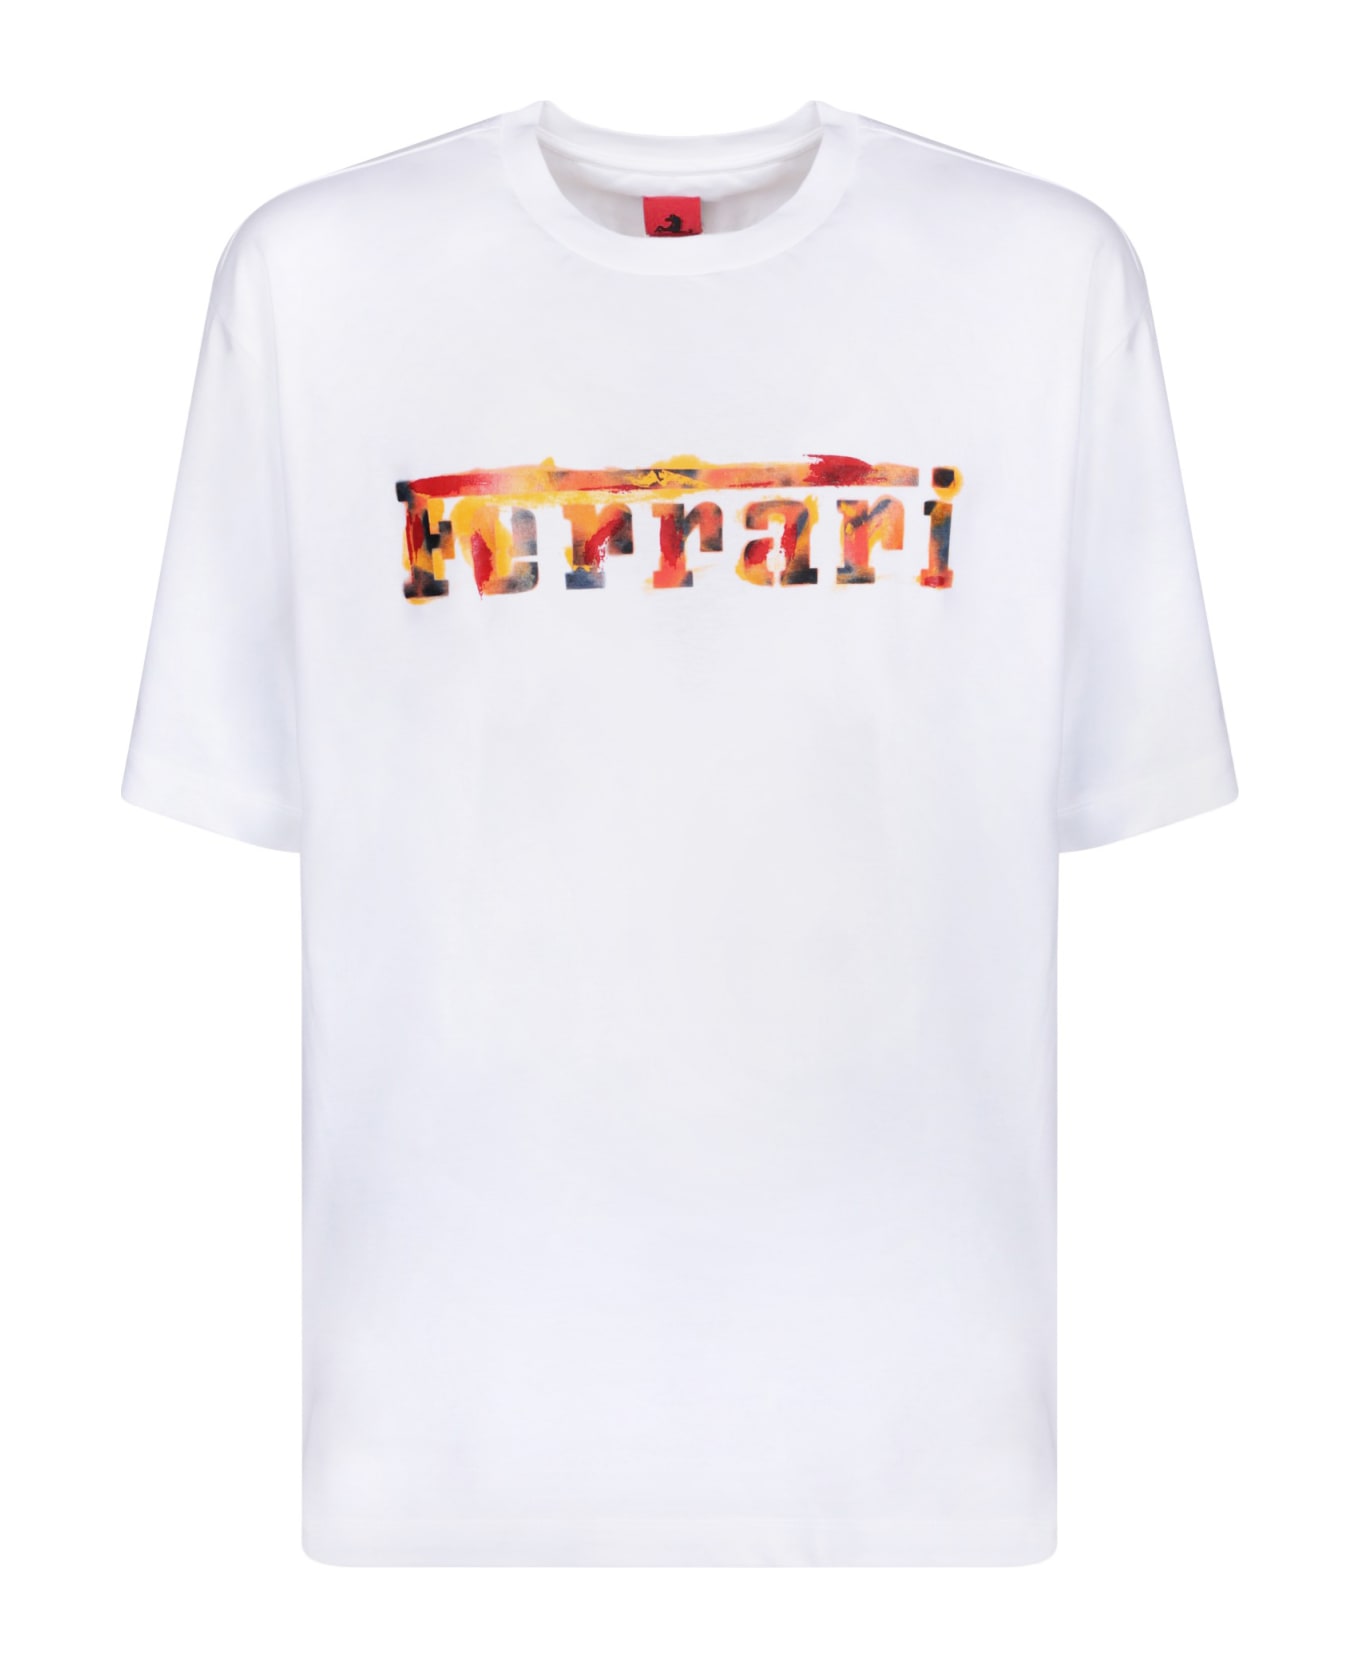 Ferrari Graffiti Logo White T-shirt - White シャツ